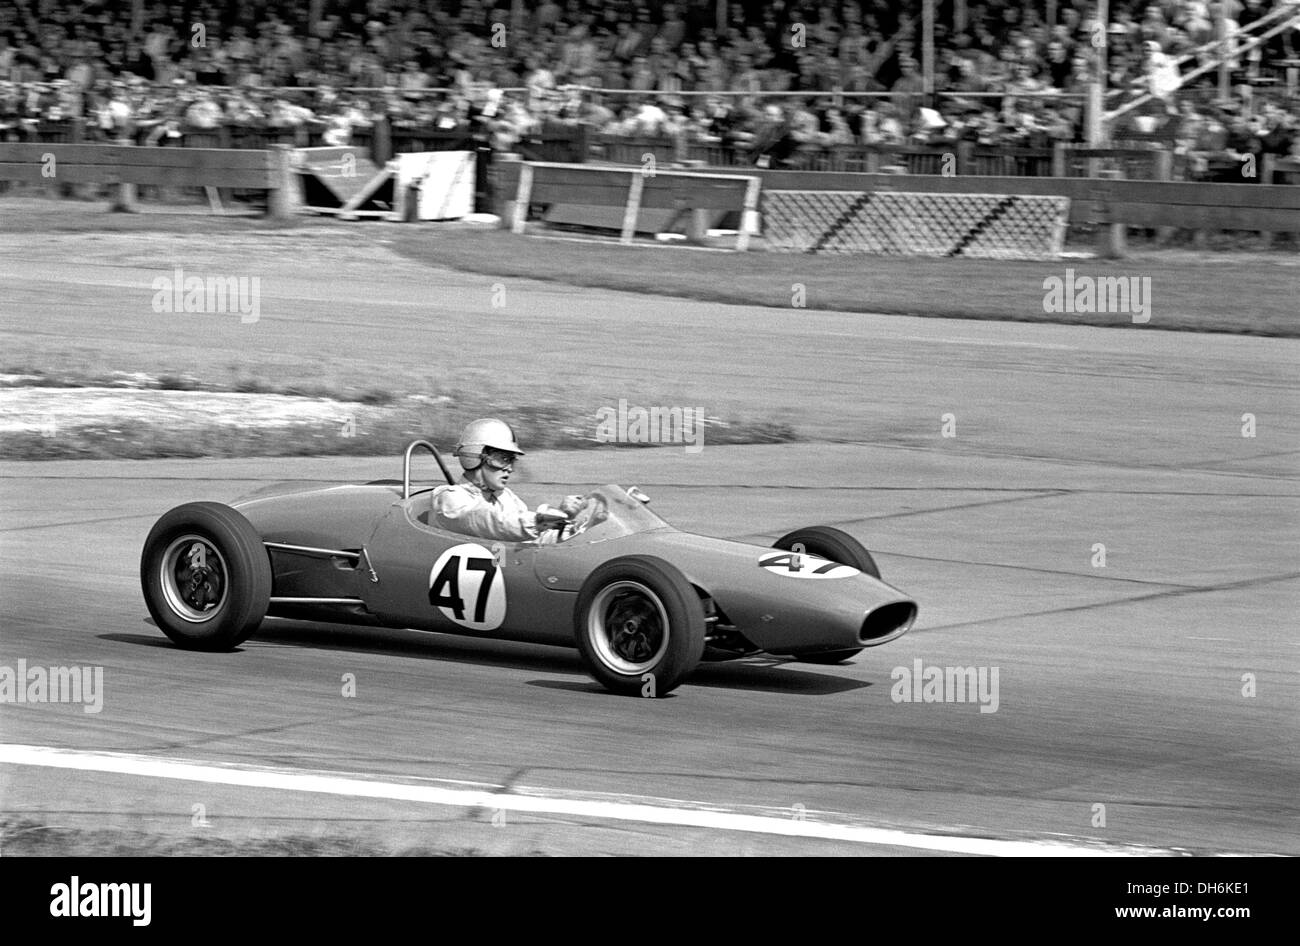 Gavin ci serviamo di MRD, il primo prototipo di Brabham racing car disegnato da Ron Tauranac. Formula Junior gara, Goodwood, Inghilterra 1961. Foto Stock